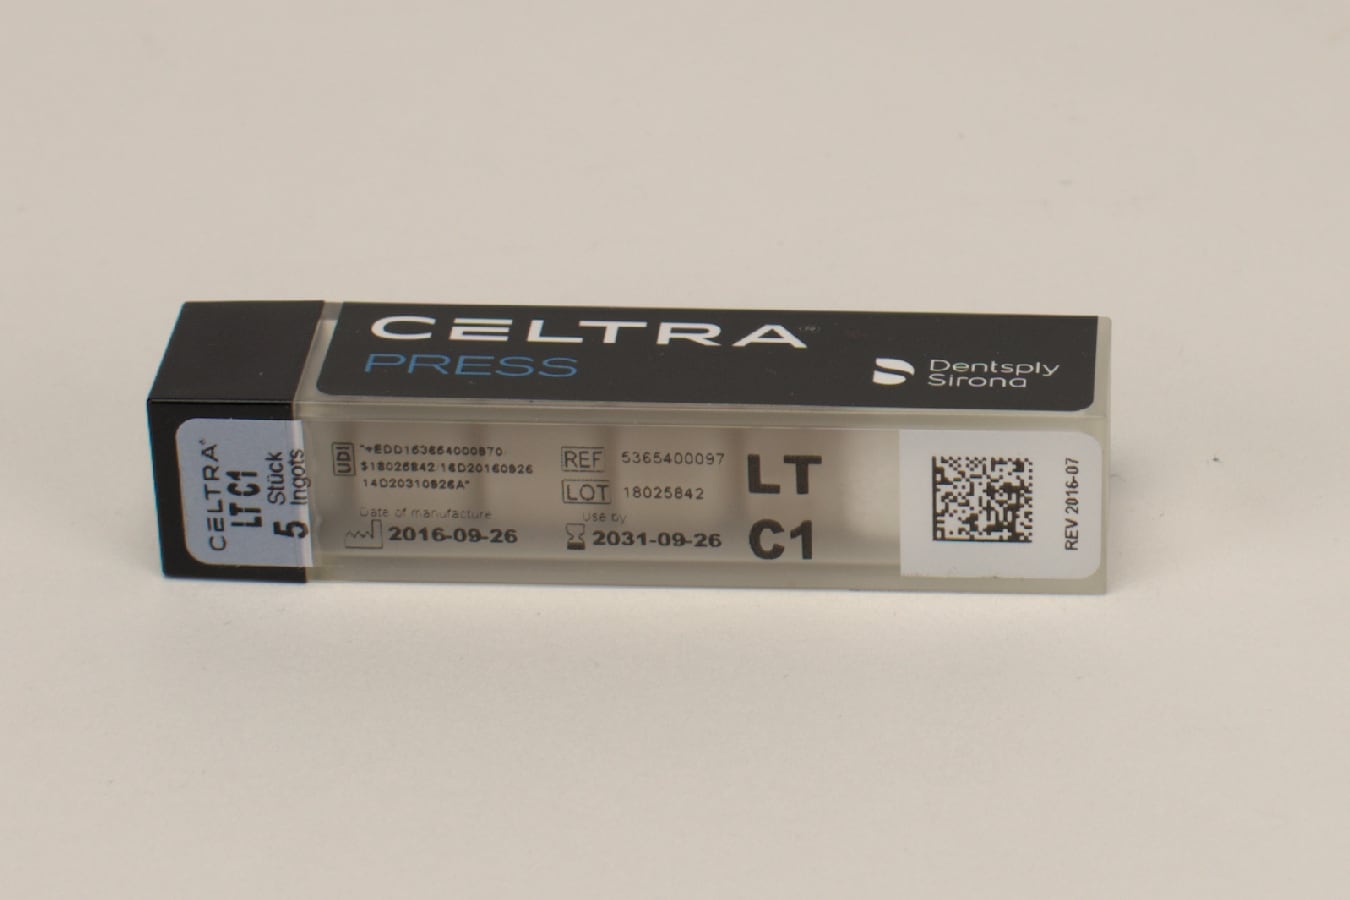 CELTRA PRESS LT C1 5x3g 